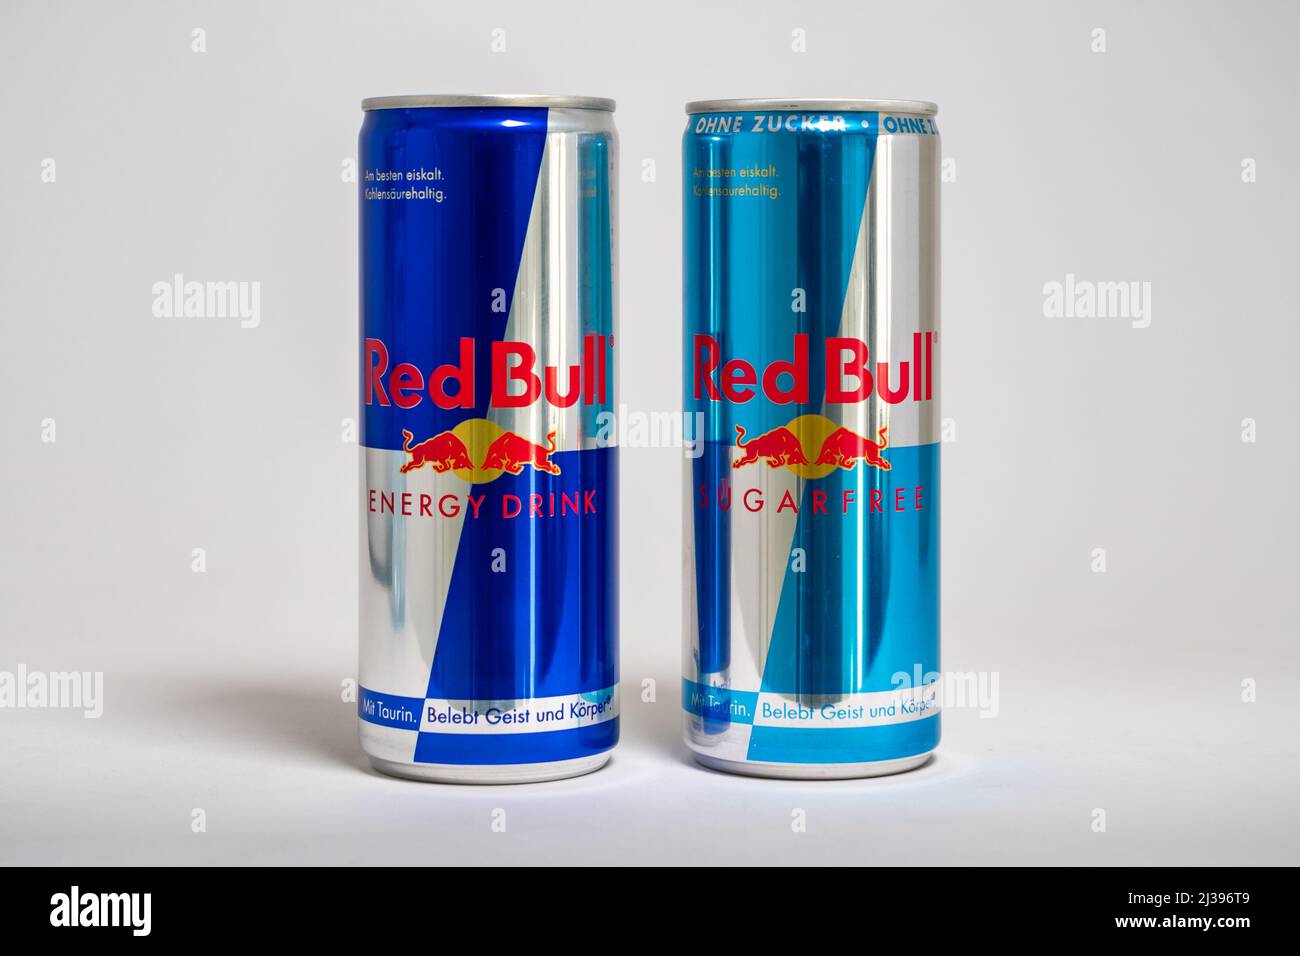 Red Bull Original- und zuckerfreie Dosen nebeneinander. Berühmte Energy-Drink-Marke in verschiedenen Variationen. Lifestyle-Getränk mit Stockfotografie Alamy